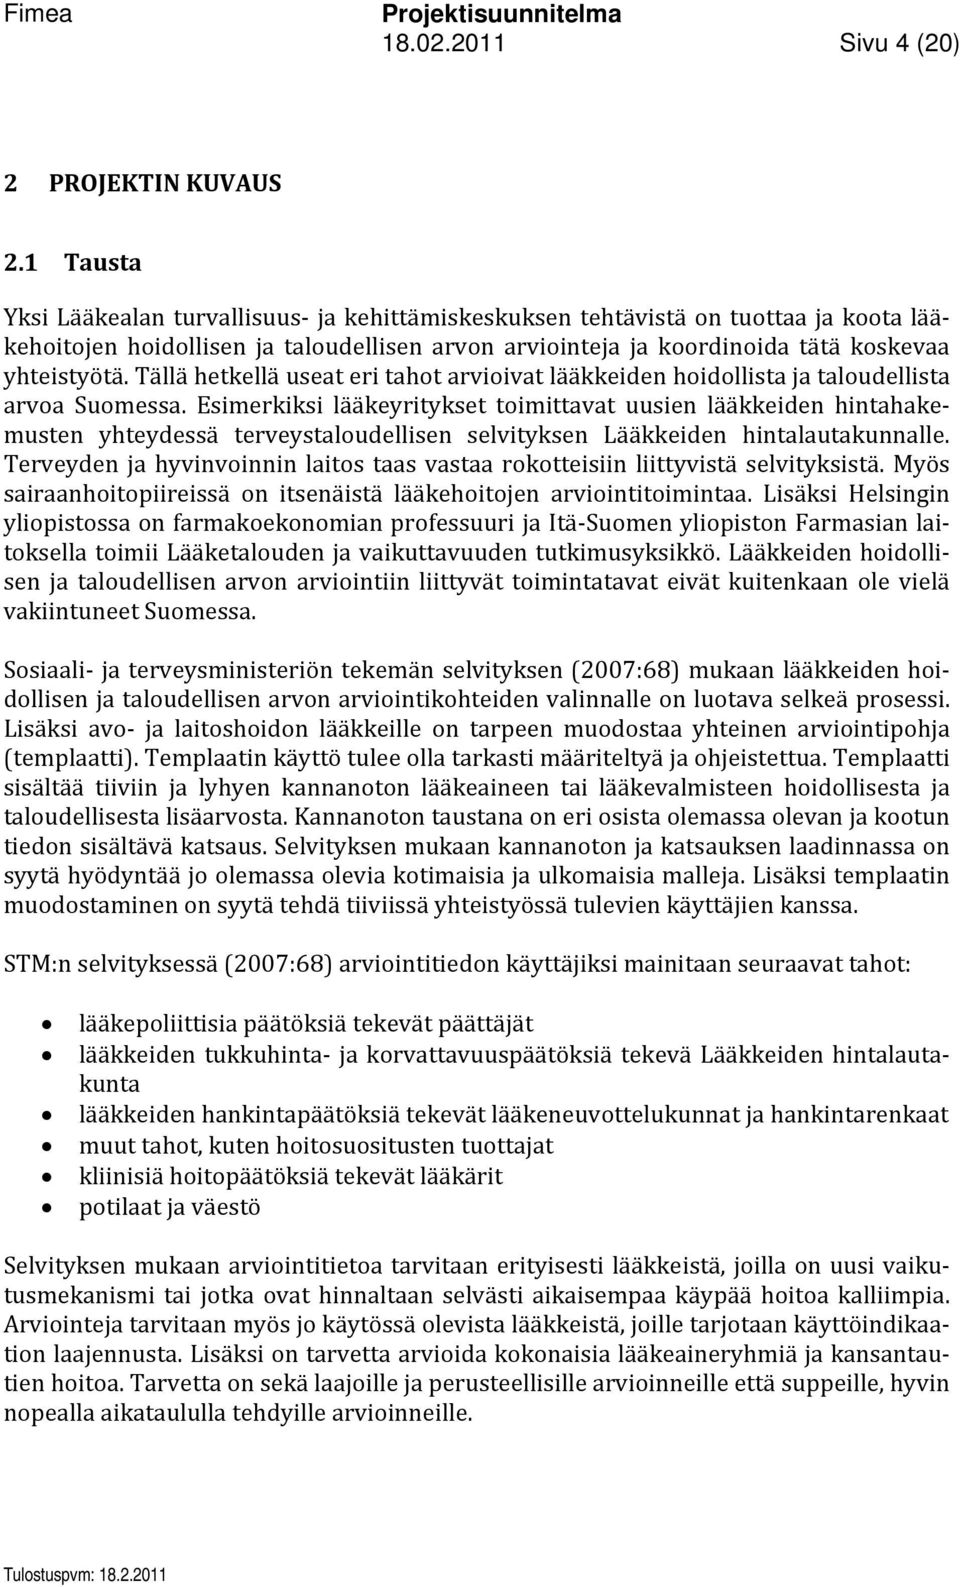 Tällä hetkellä useat eri tahot arvioivat lääkkeiden hoidollista ja taloudellista arvoa Suomessa.